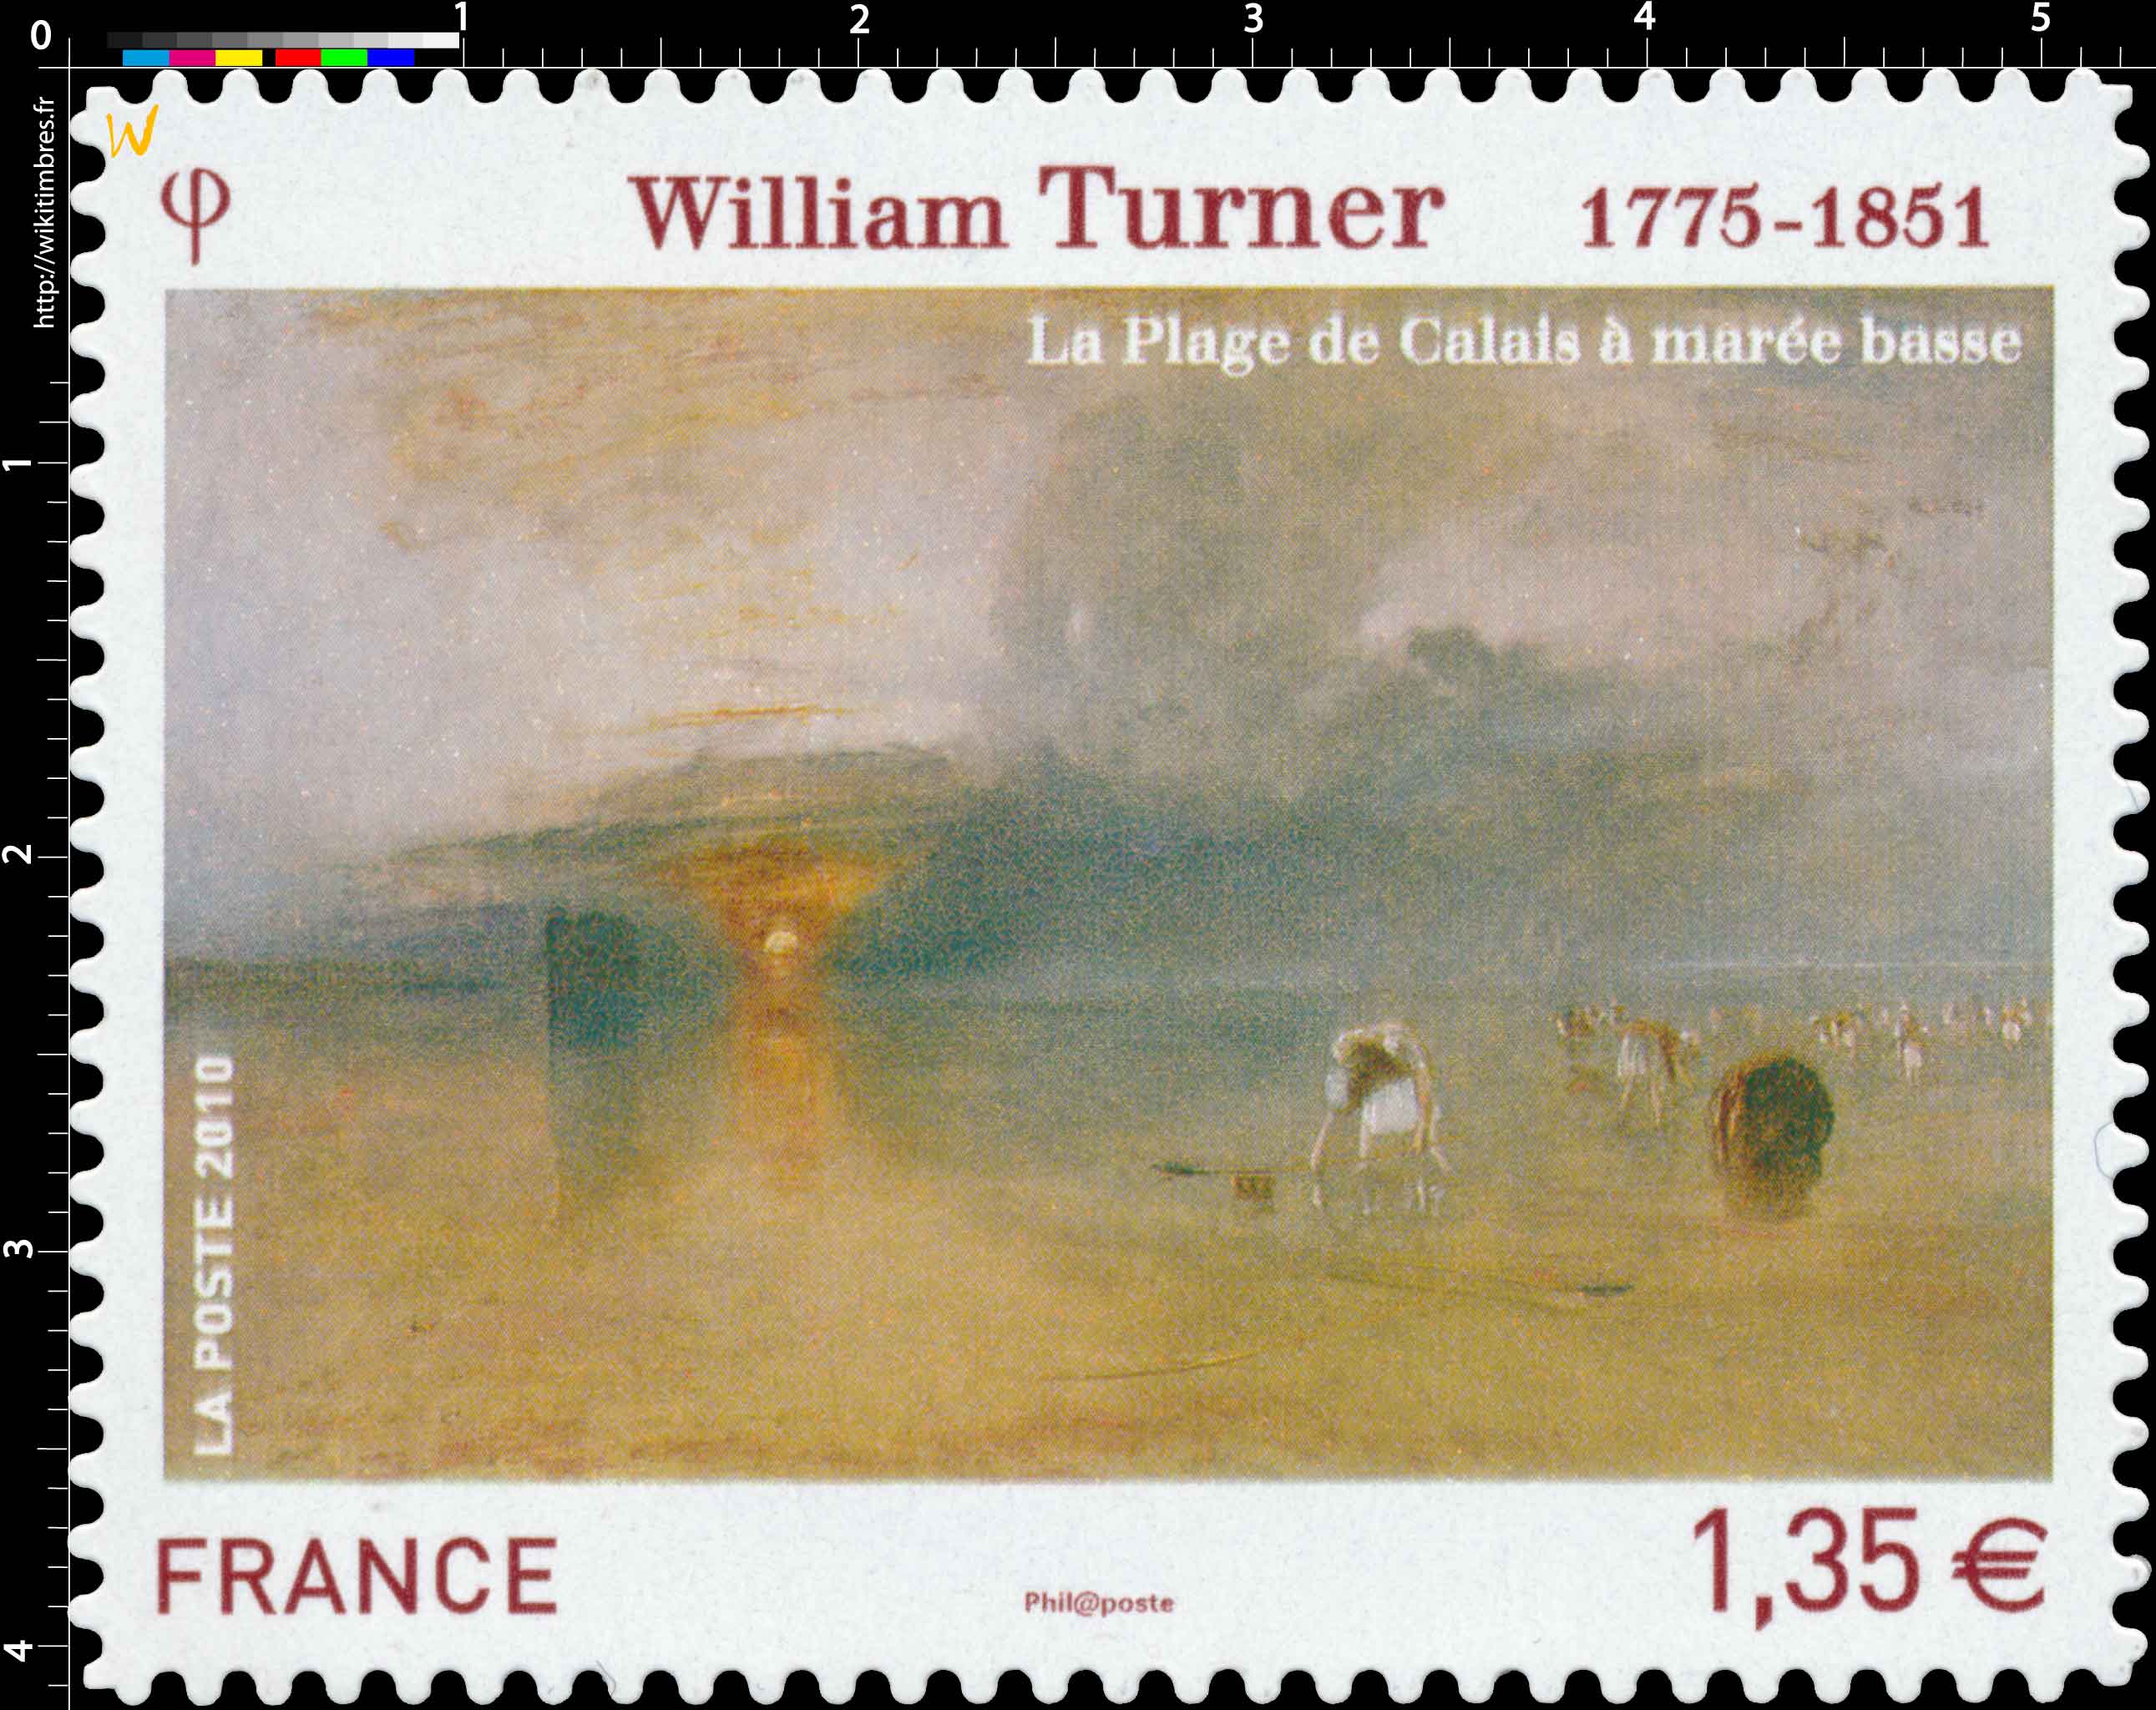 2010 William Turner 1775-1851 La plage de Calais à marée basse